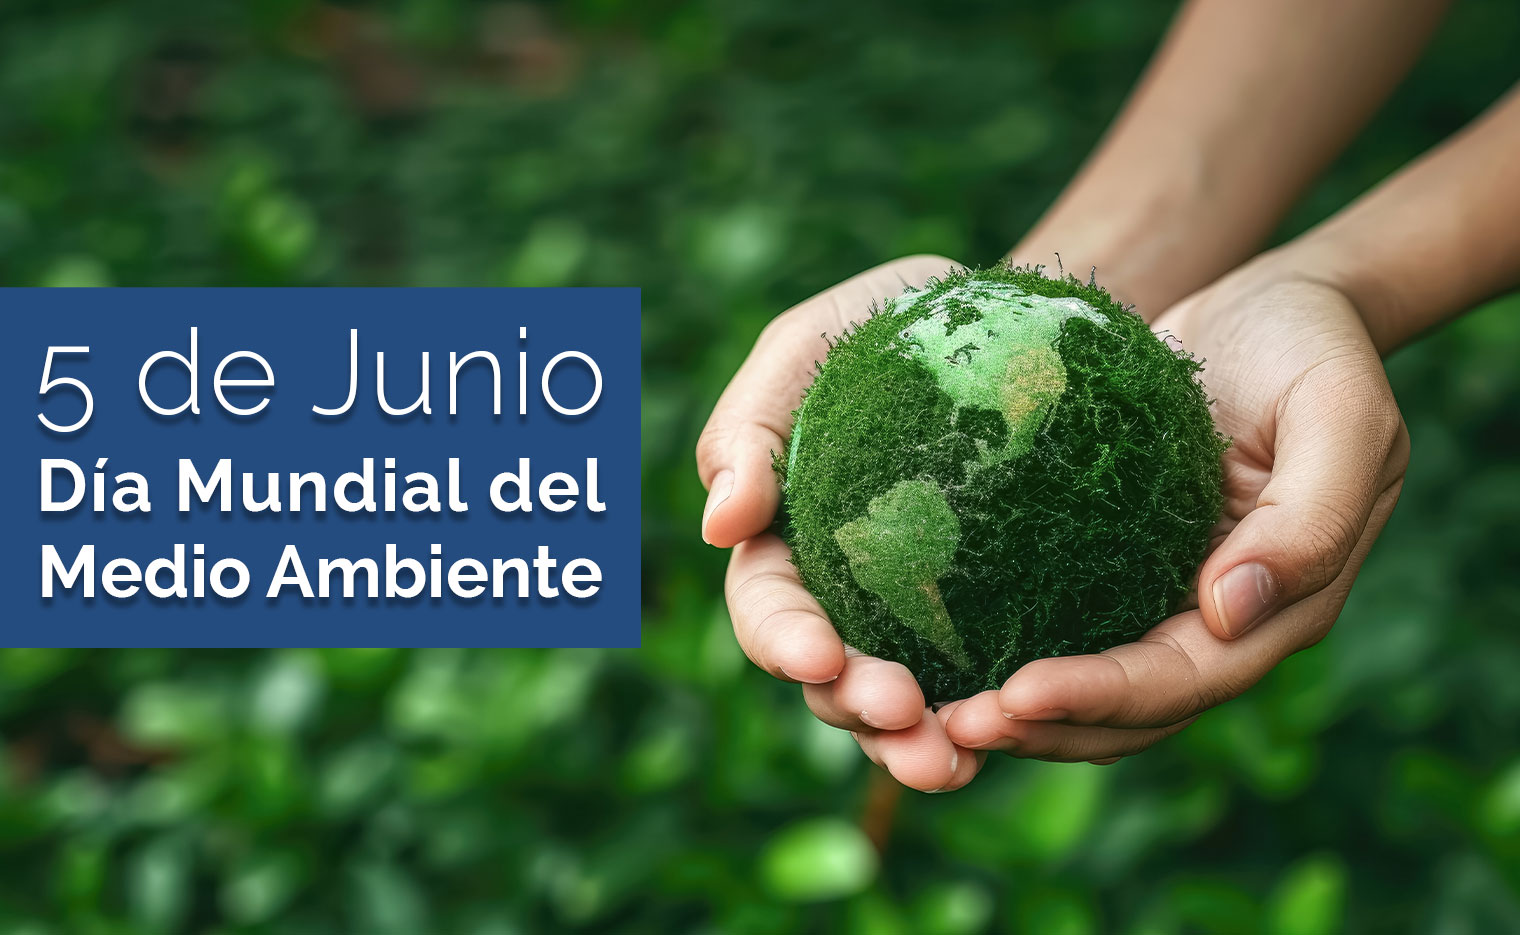 5 de junio - Día mundial del medio ambiente